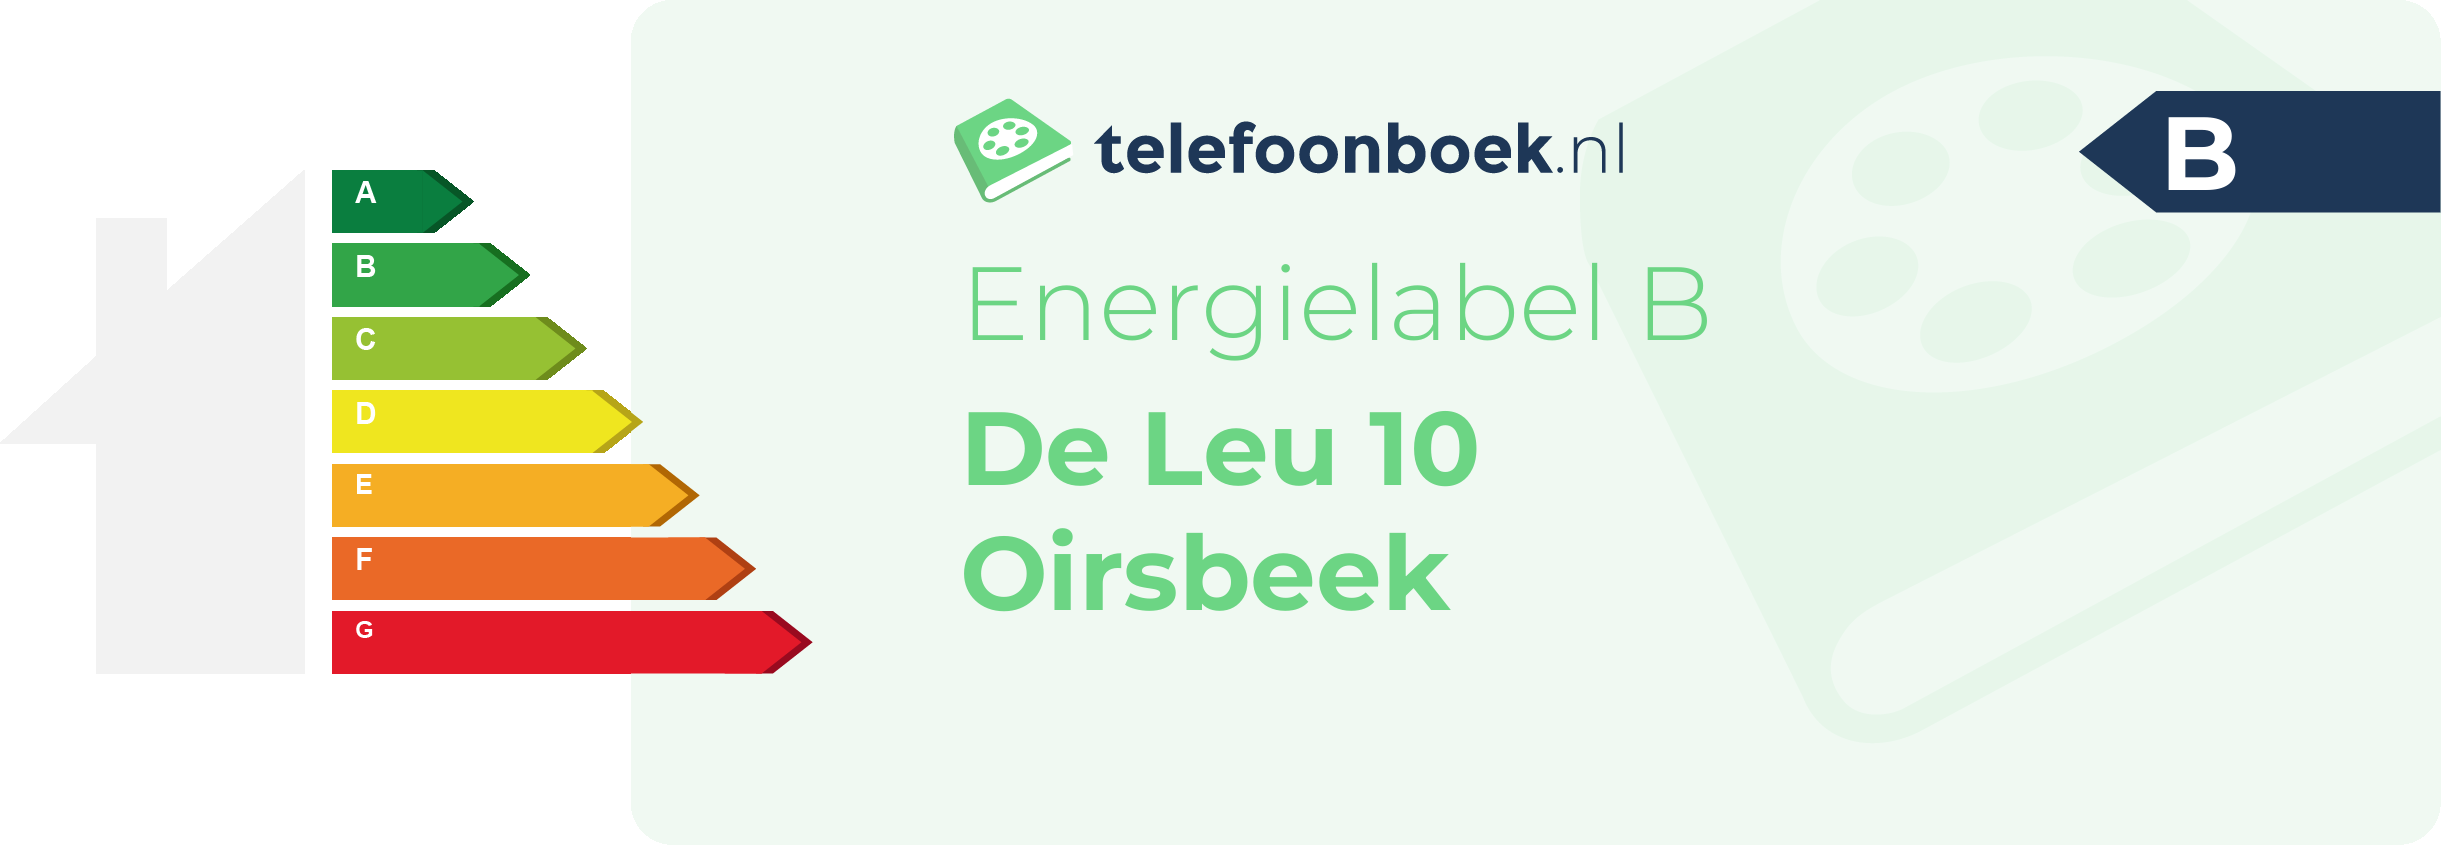 Energielabel De Leu 10 Oirsbeek